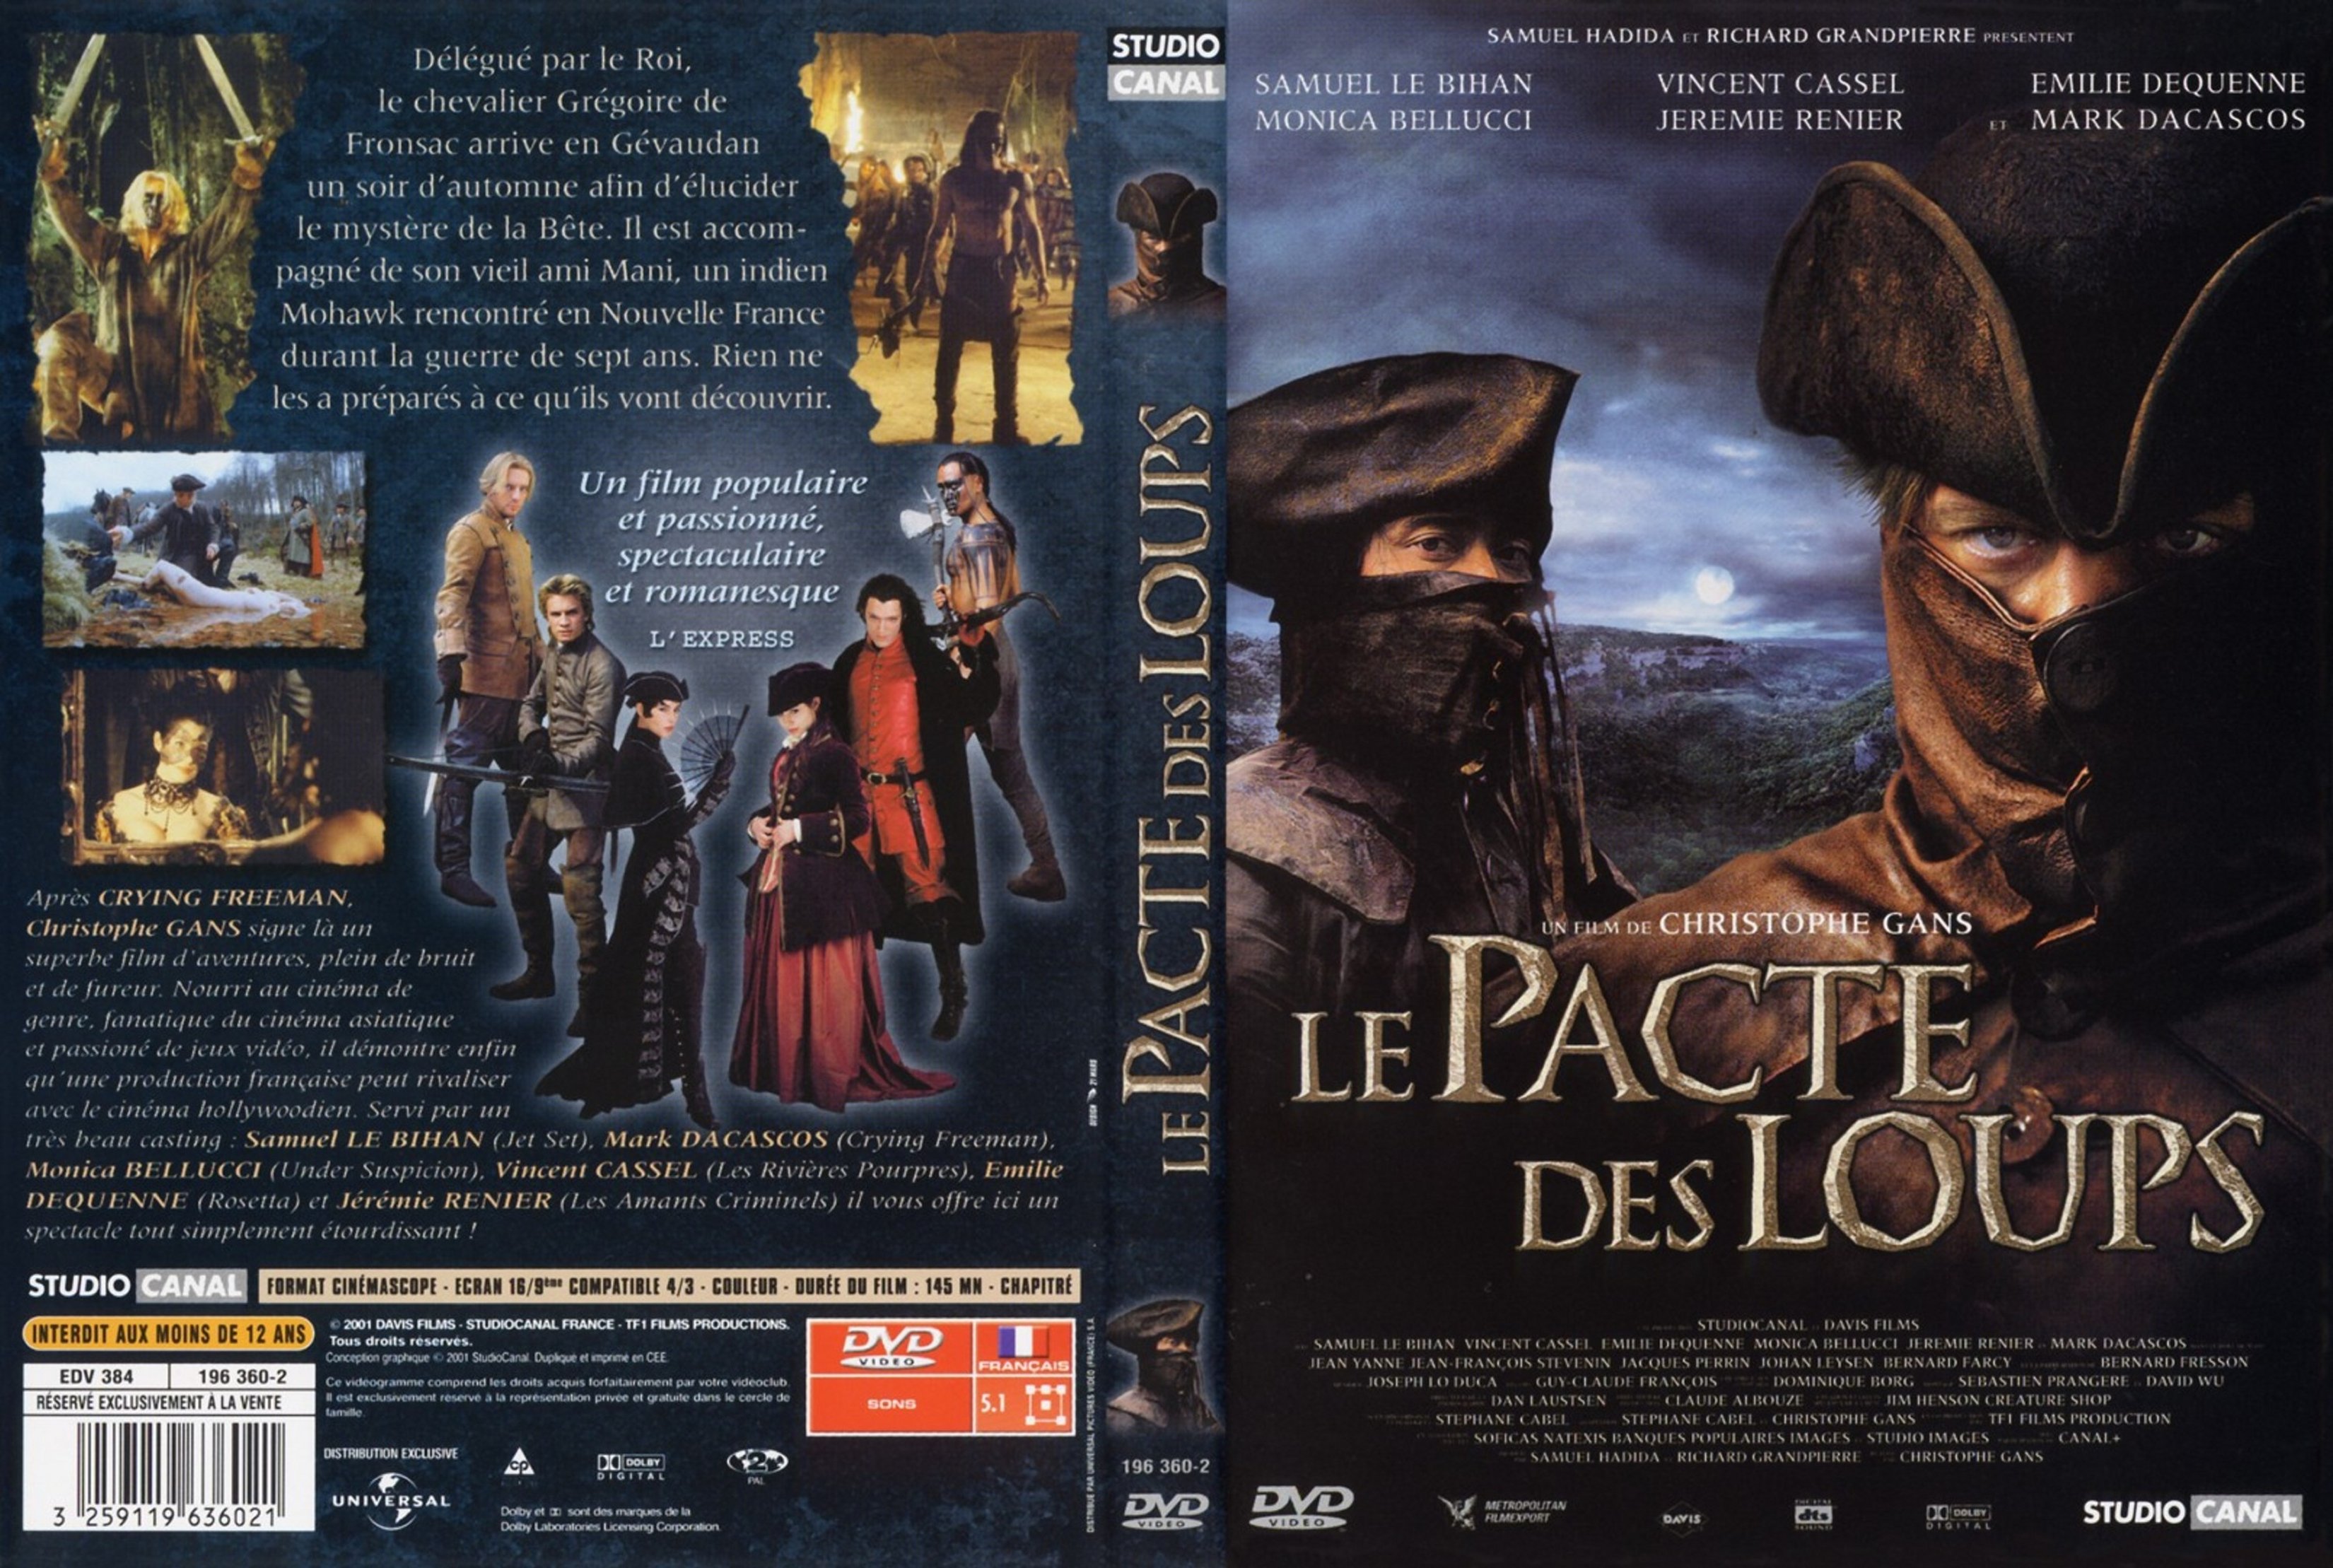 Jaquette DVD Le pacte des loups